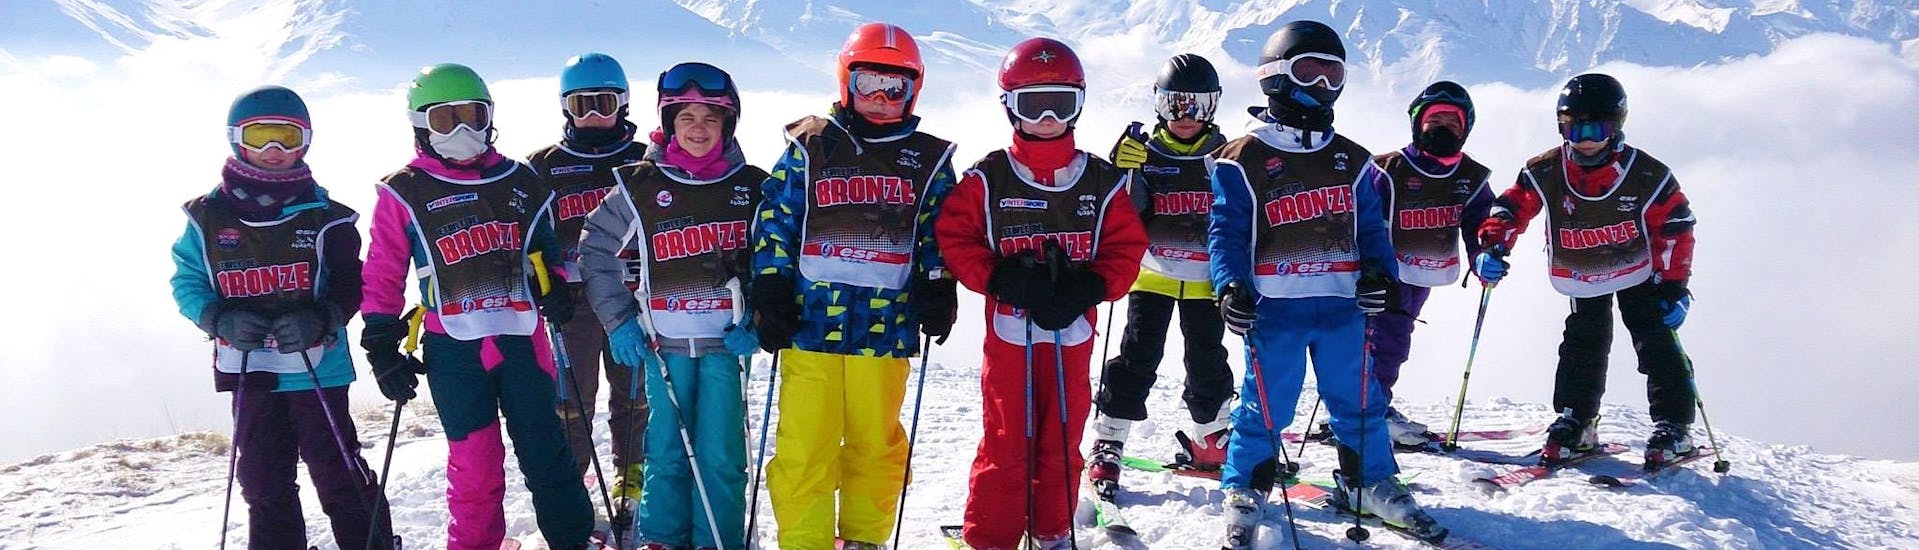 Des enfants prennent une photo devant un fond enneigé à la fin de leur Cours de ski Enfants (5-12 ans) pour Tous niveaux avec l'école de ski ESF Aussois.